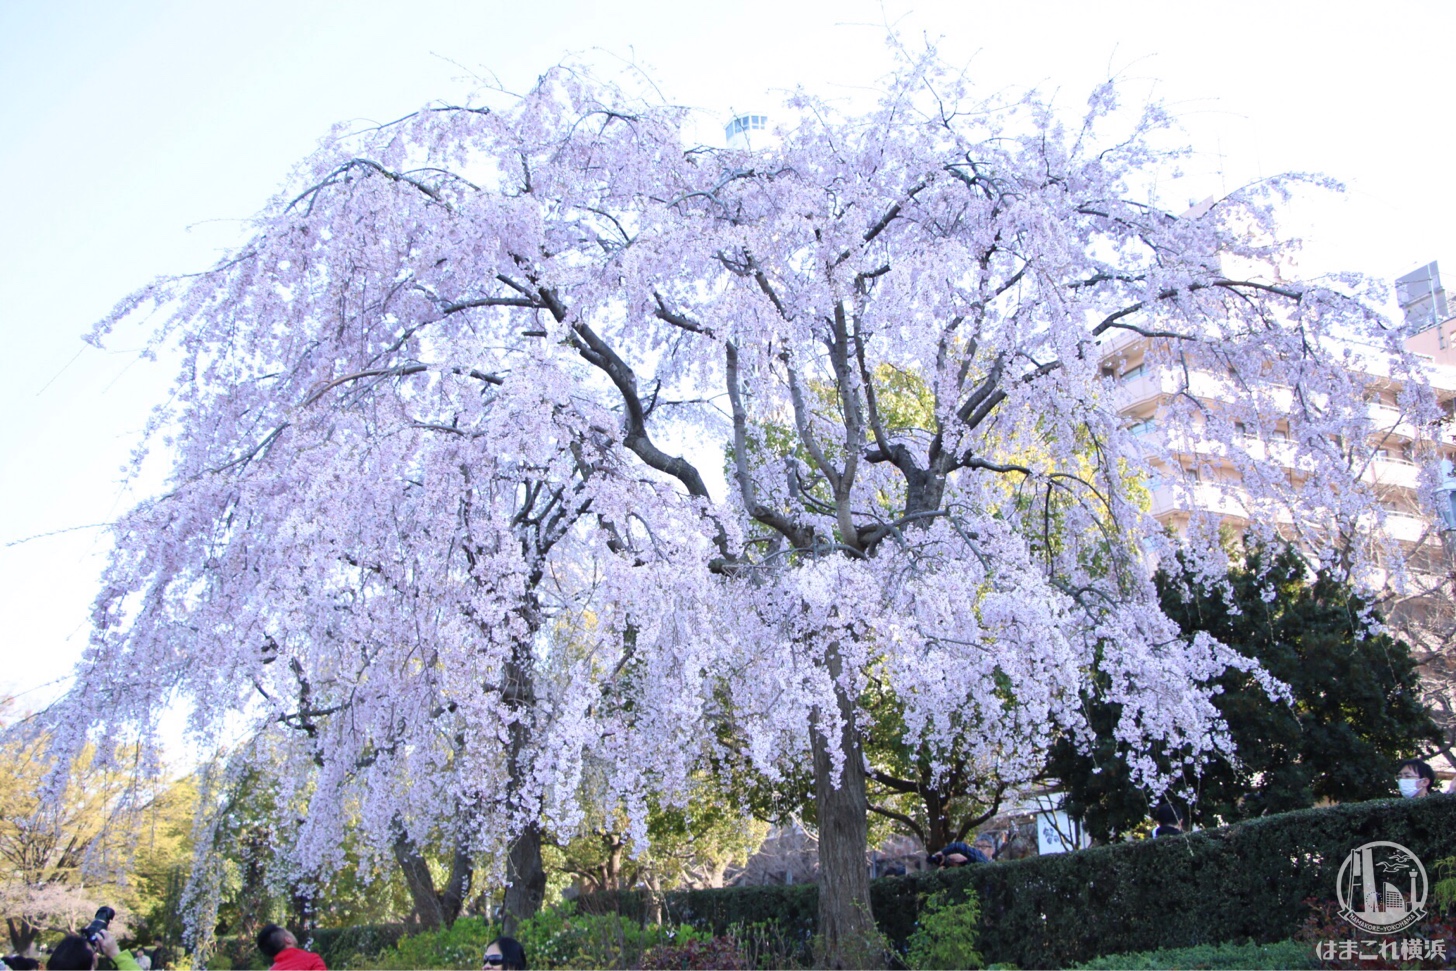 横浜 山下公園のしだれ桜が見頃 横浜の人気桜スポット はまこれ横浜